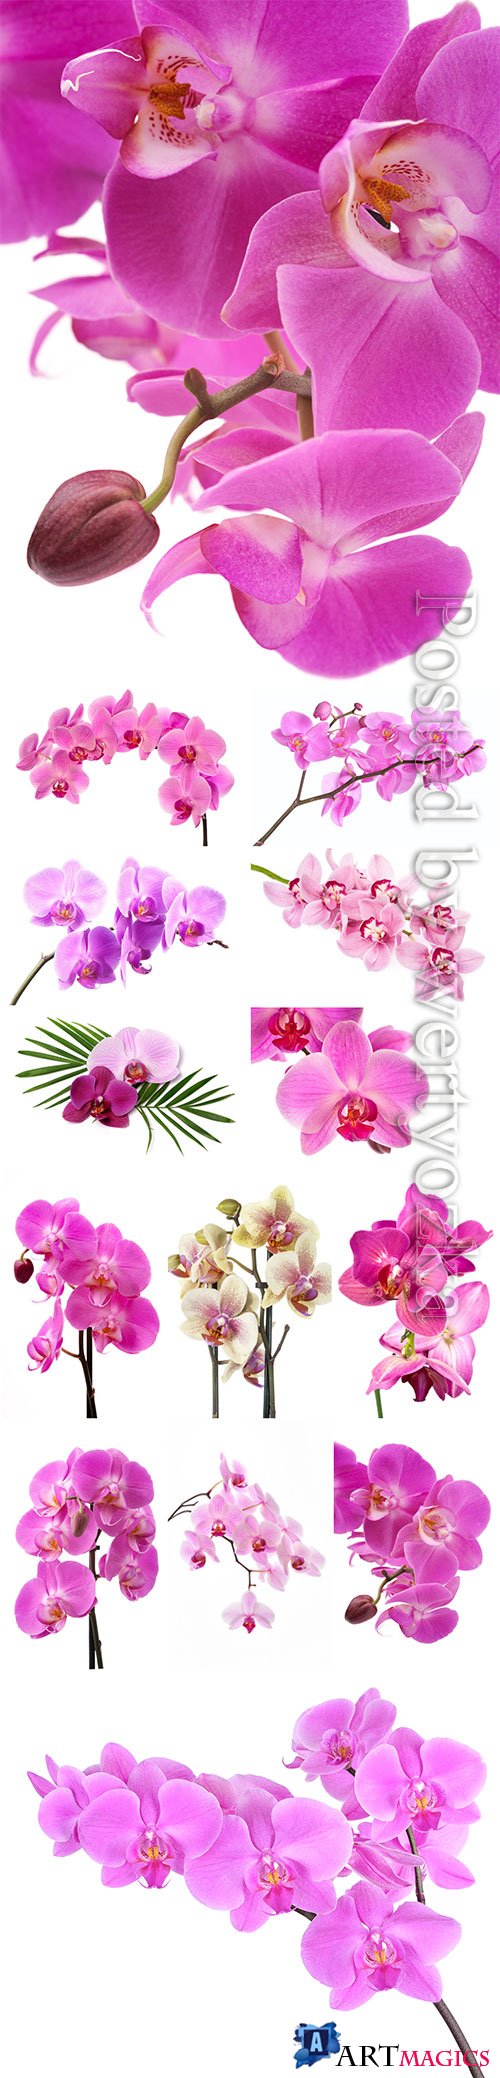 Beautiful orchids stock photo